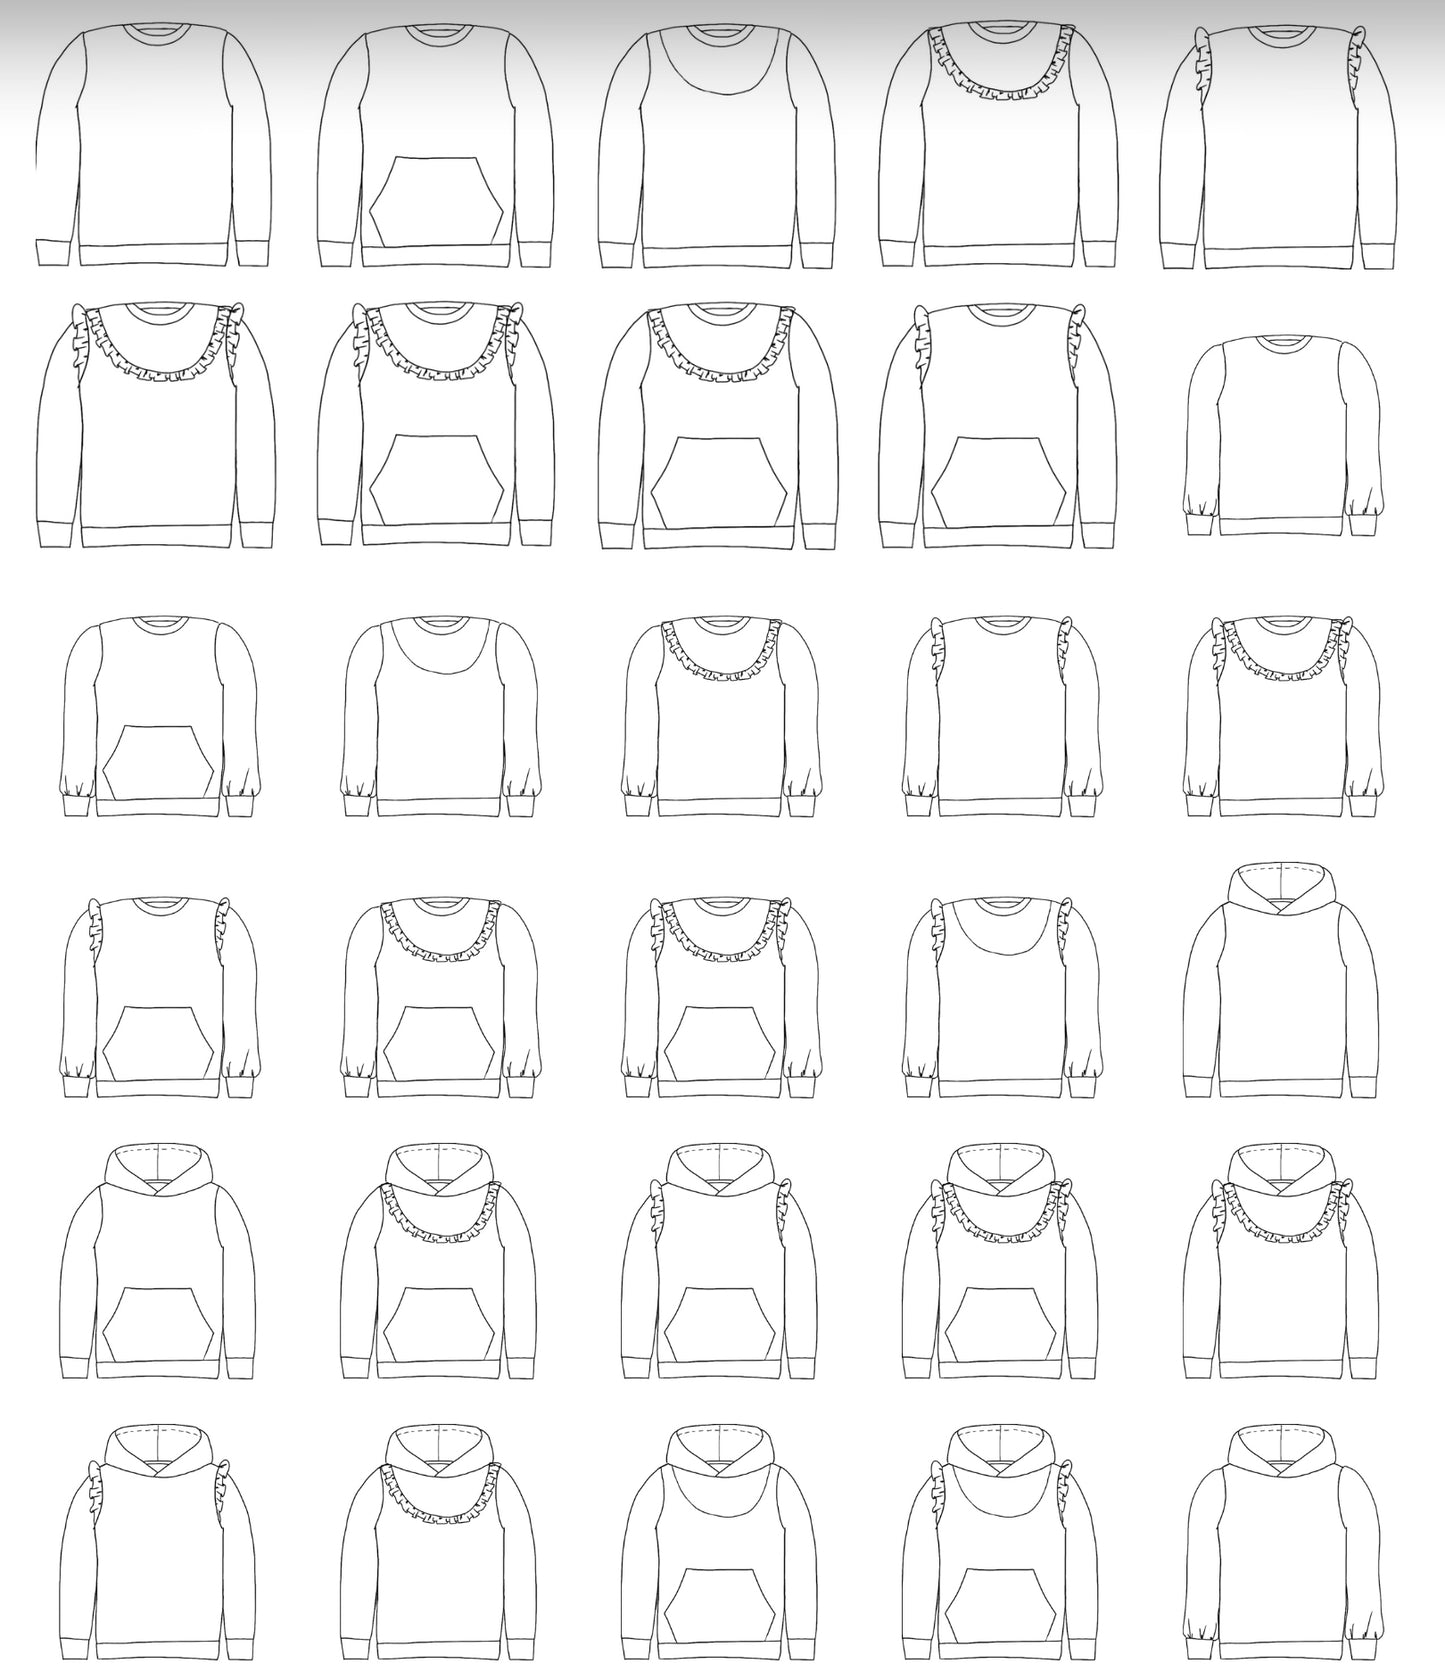 Sweat Mackaon Enfant / Junior 3-15 ans (Patron  de couture PDF)